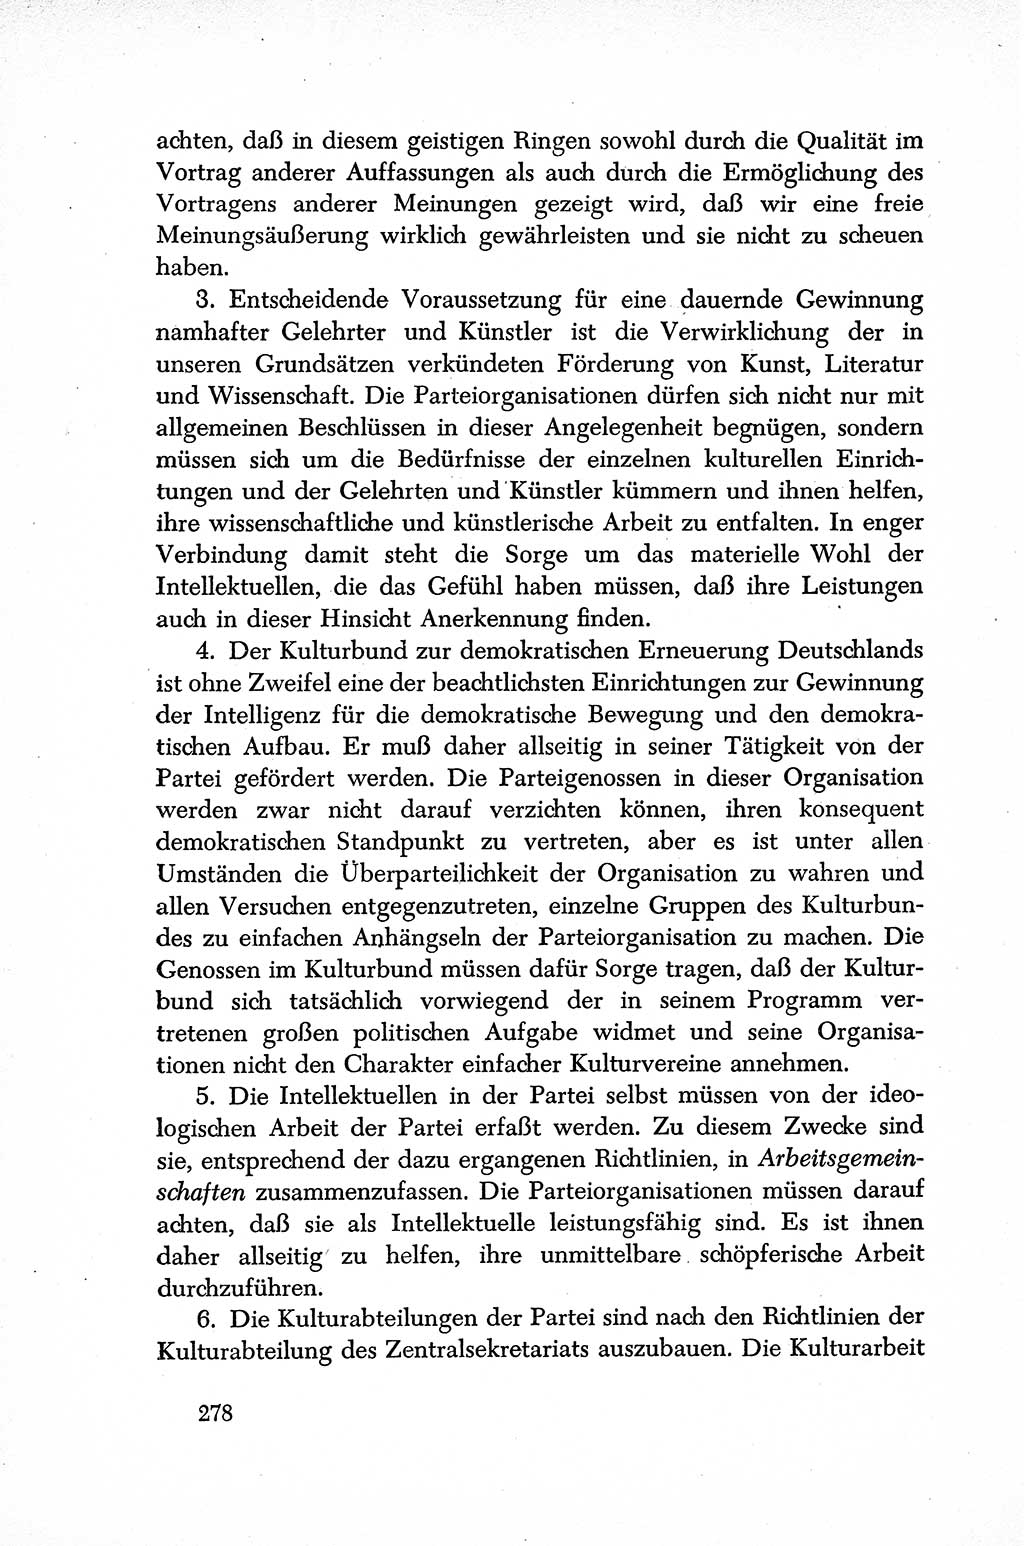 Dokumente der Sozialistischen Einheitspartei Deutschlands (SED) [Sowjetische Besatzungszone (SBZ) Deutschlands] 1946-1948, Seite 278 (Dok. SED SBZ Dtl. 1946-1948, S. 278)